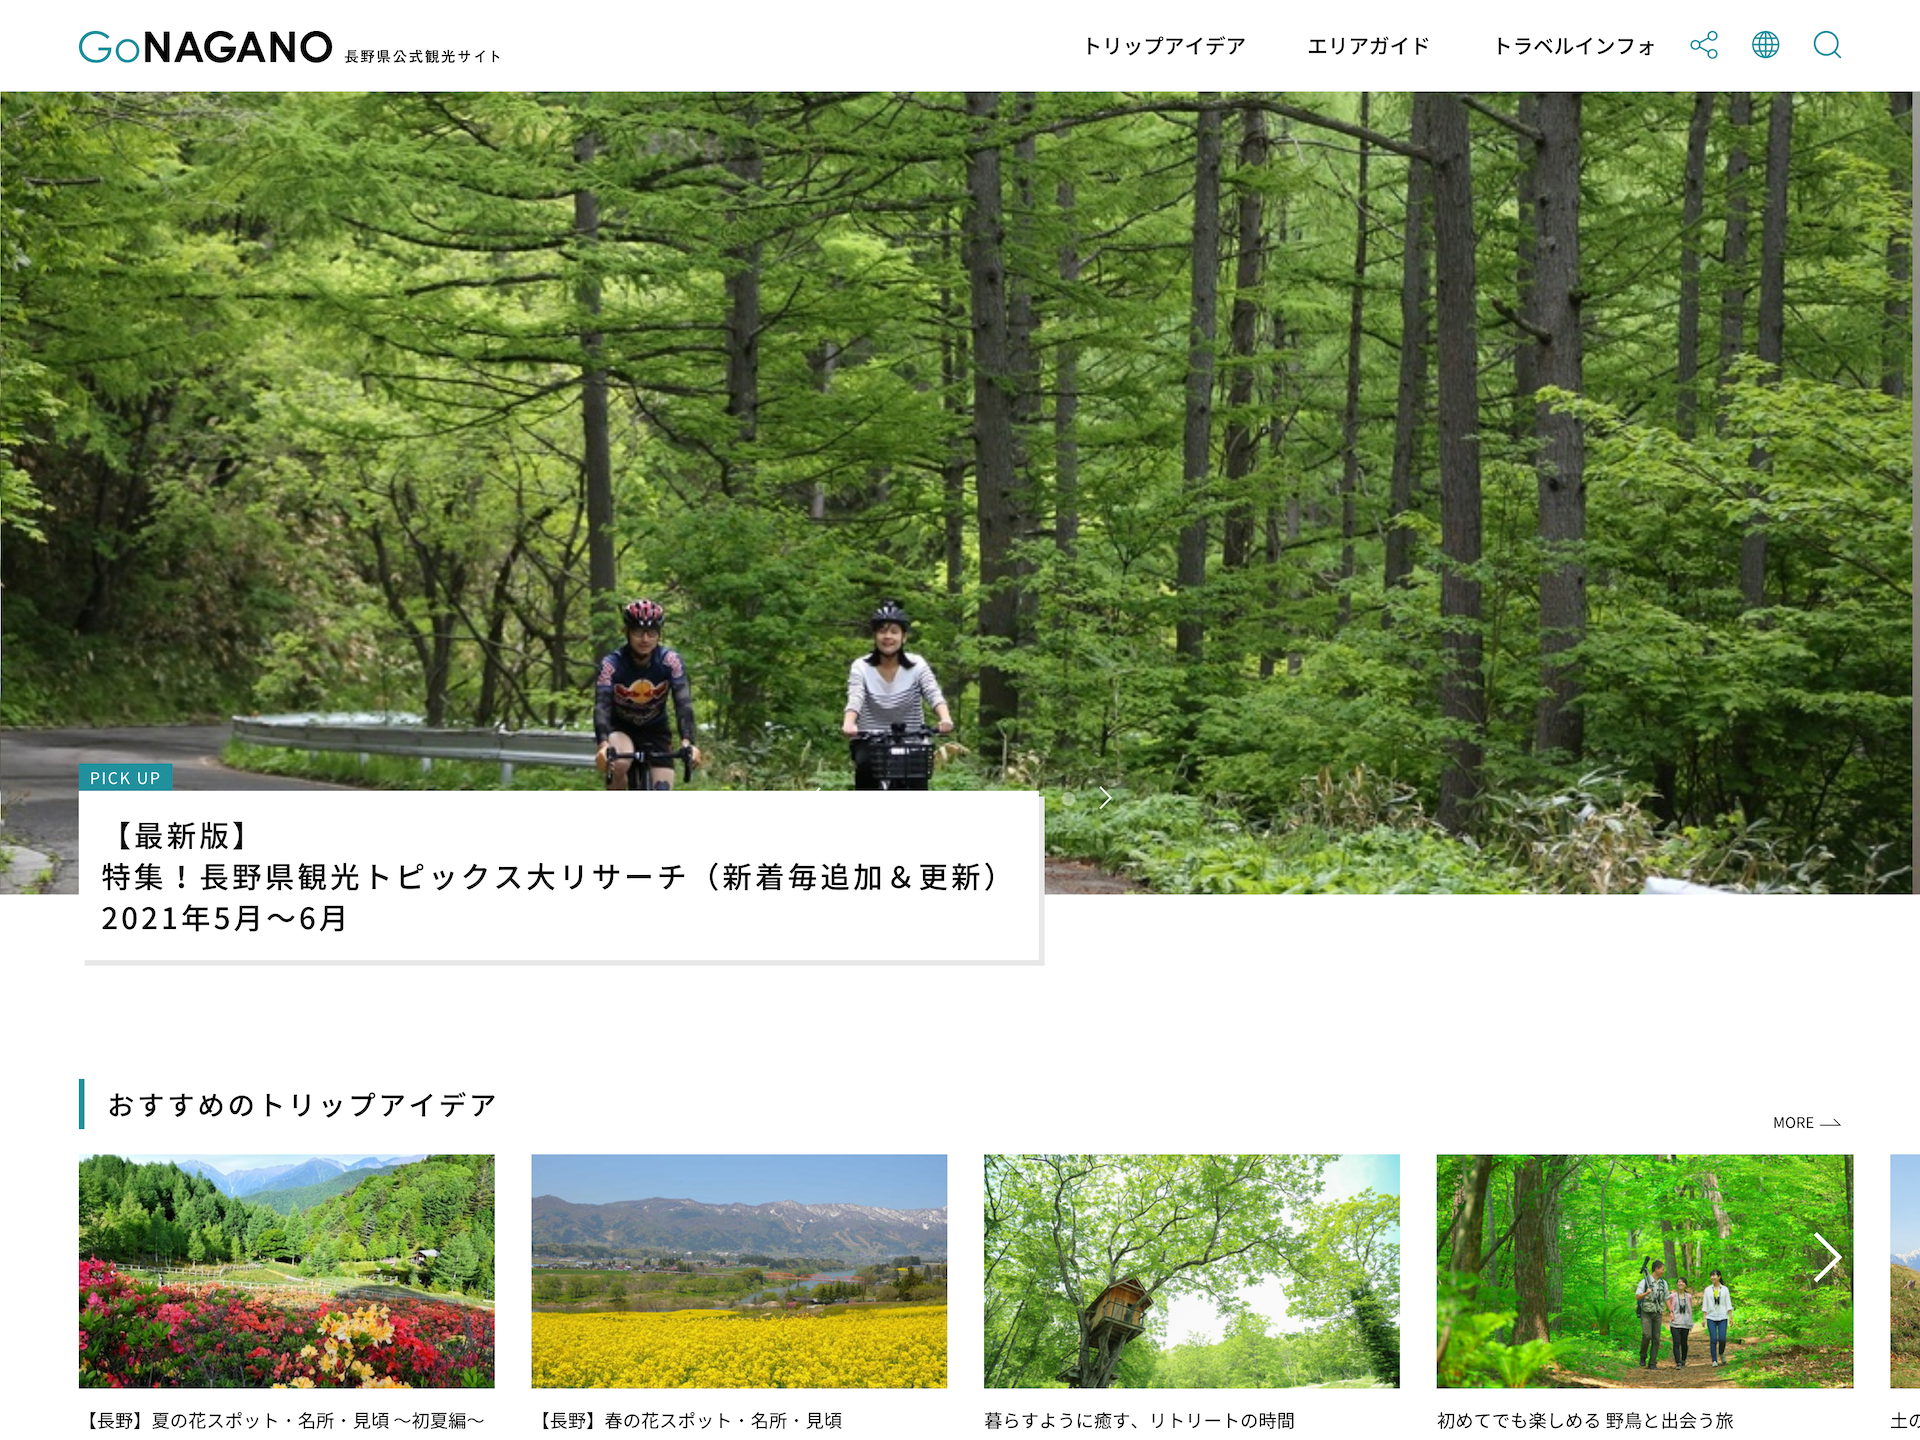 長野県公式観光サイト「Go NAGANO」